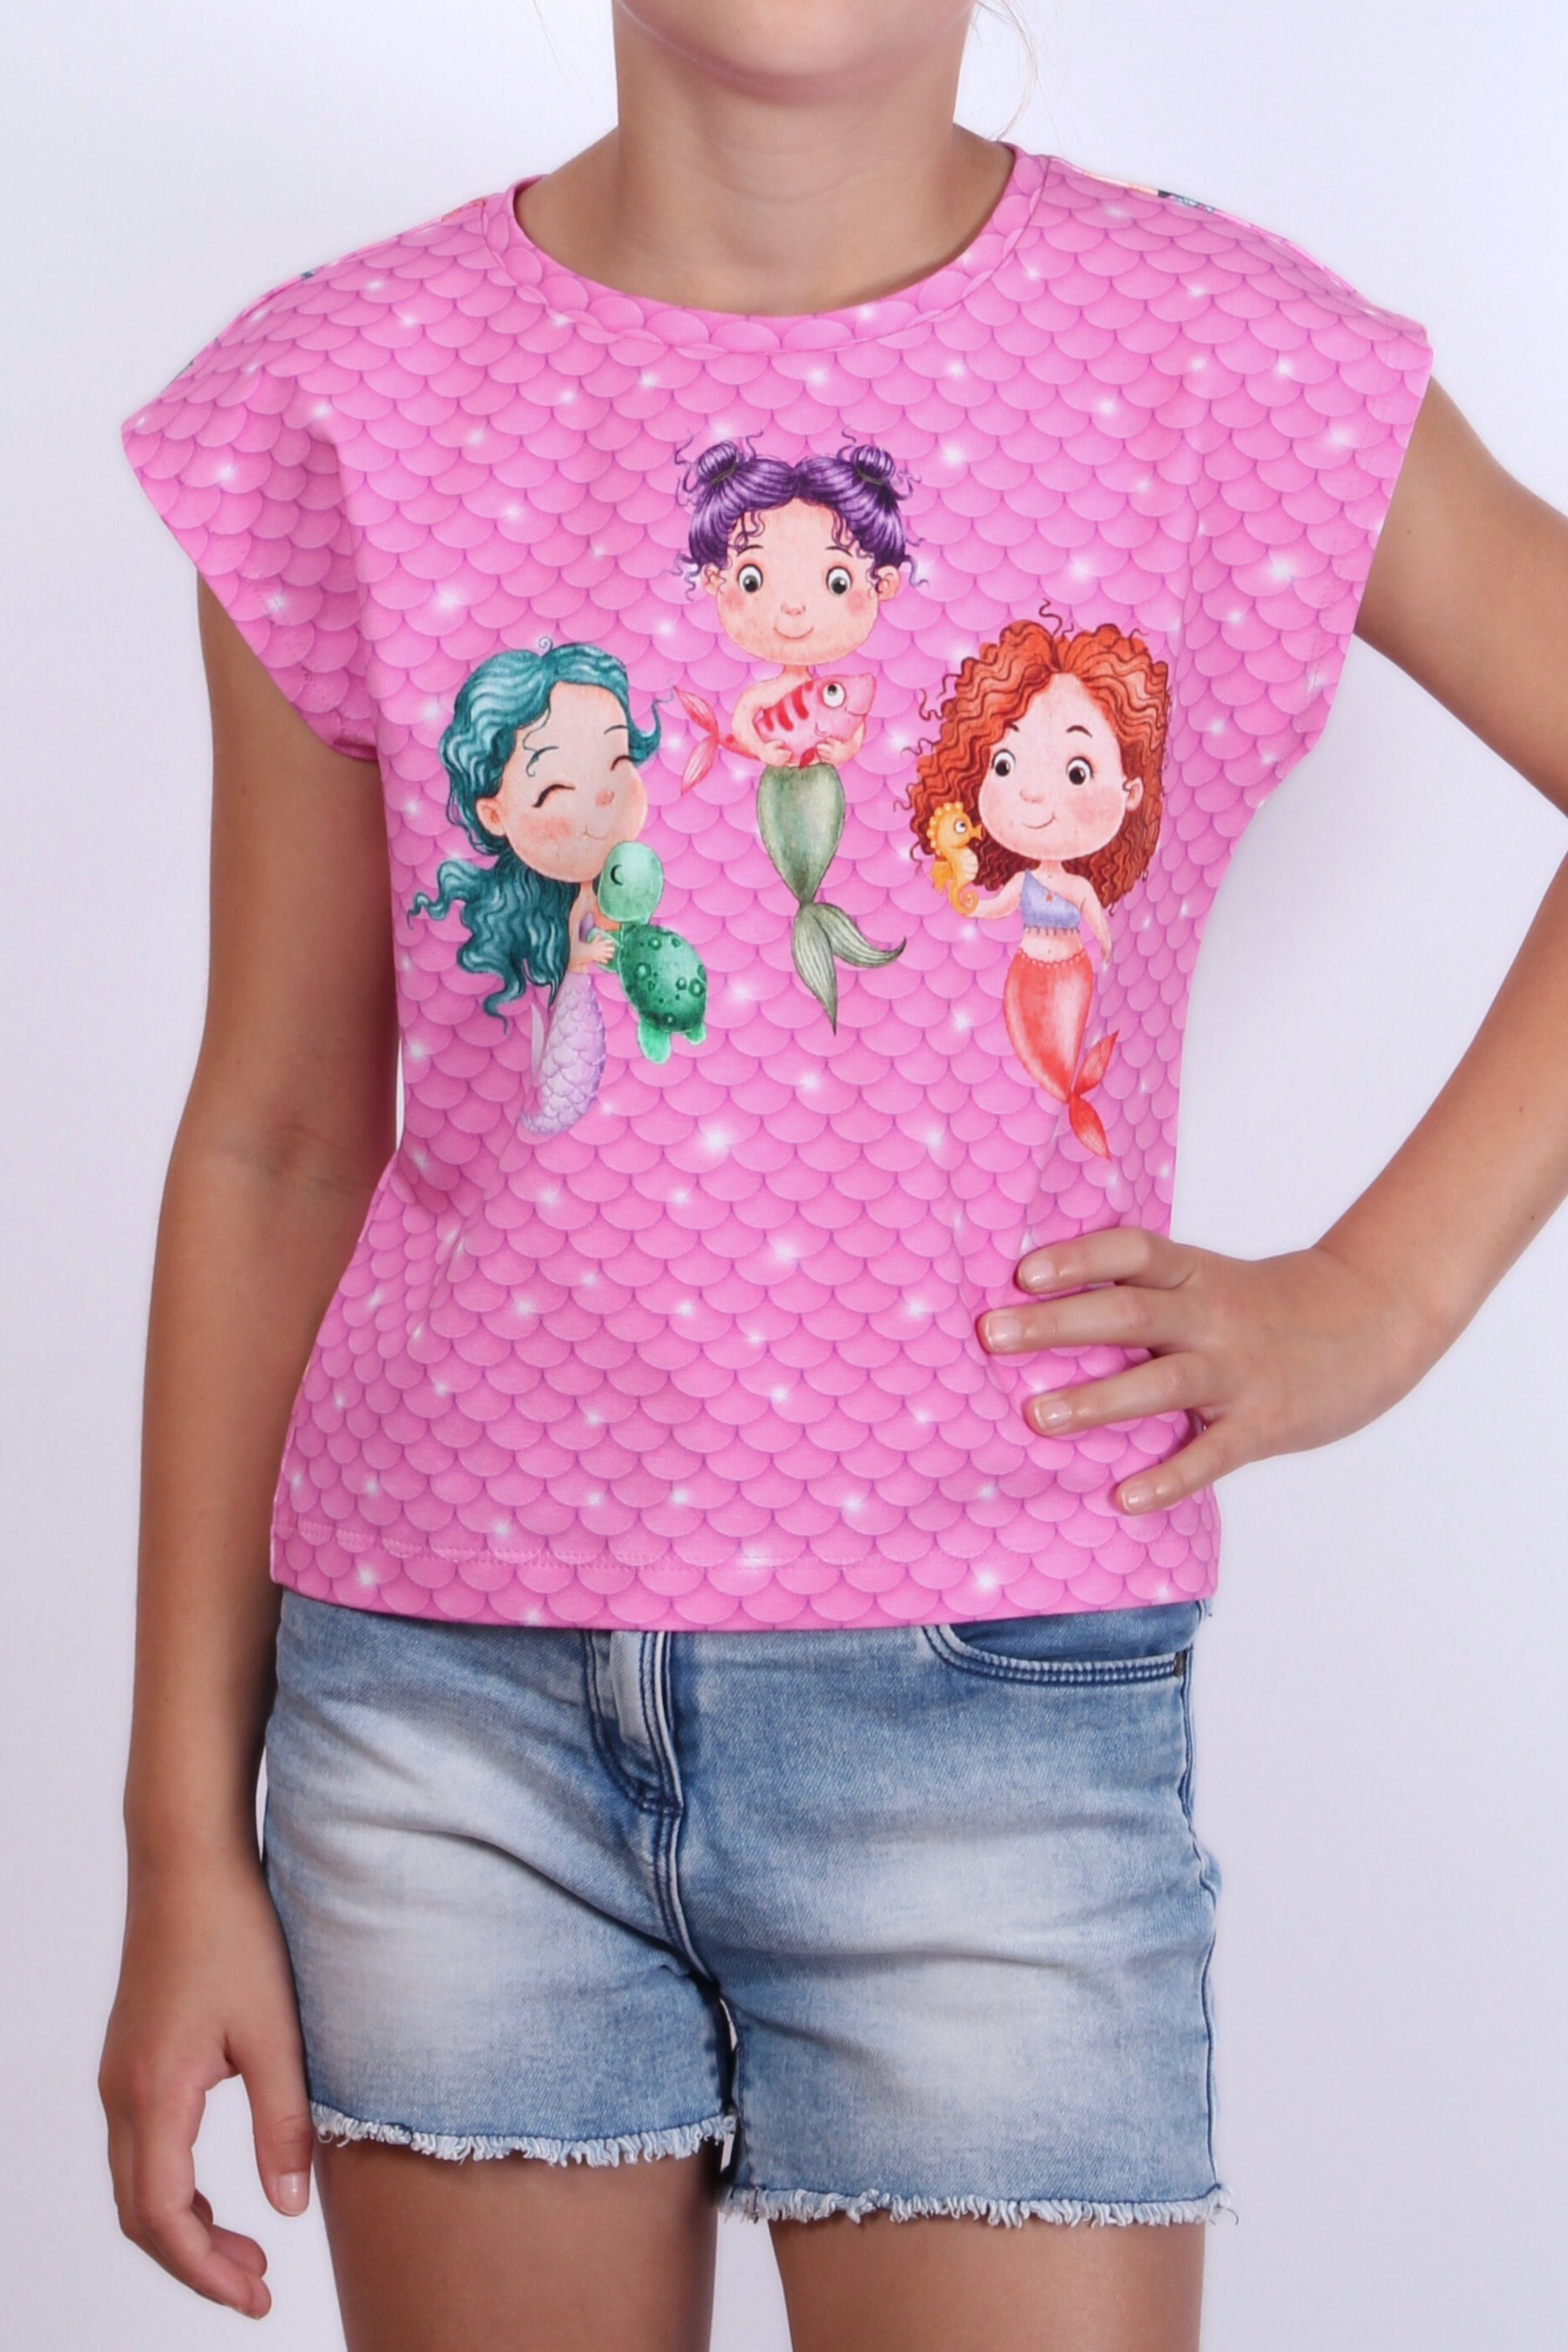 Baumwolle, coolismo für Mädchen Meerjungfrau Print-Shirt T-Shirt Motiv europäische Produktion